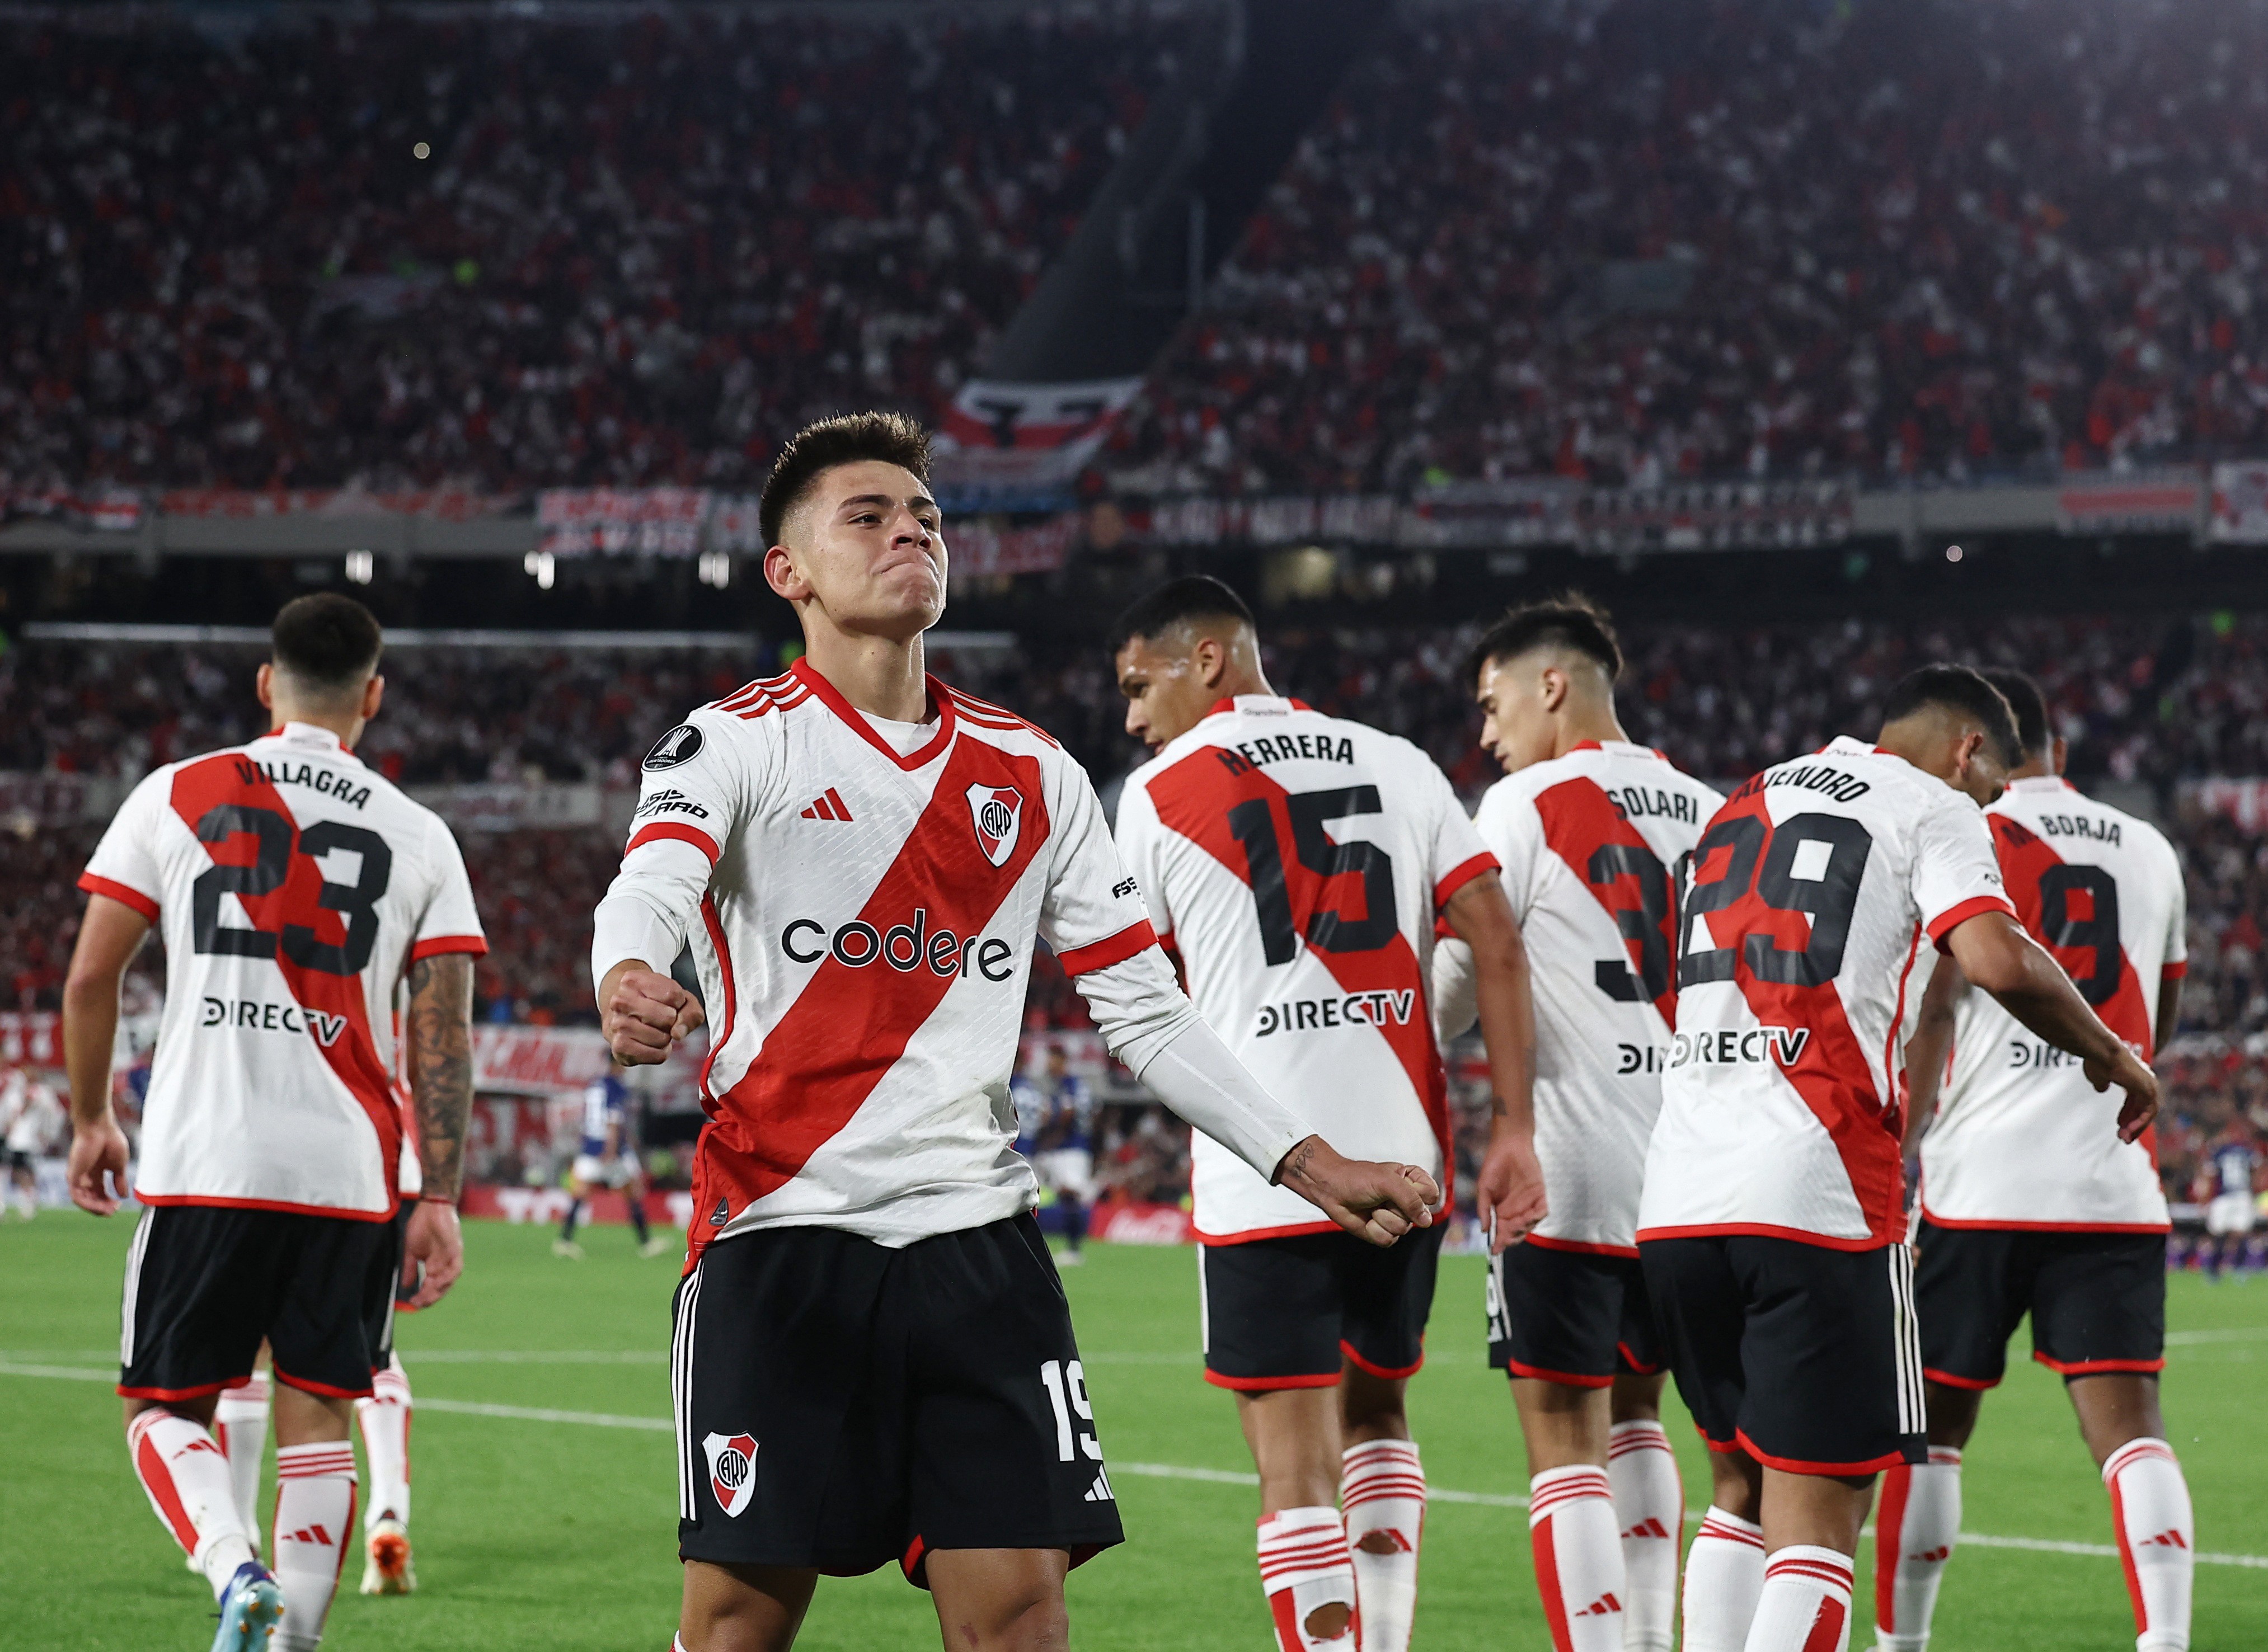 Libertad x River Plate na Conmebol Libertadores: onde assistir ao vivo e horário